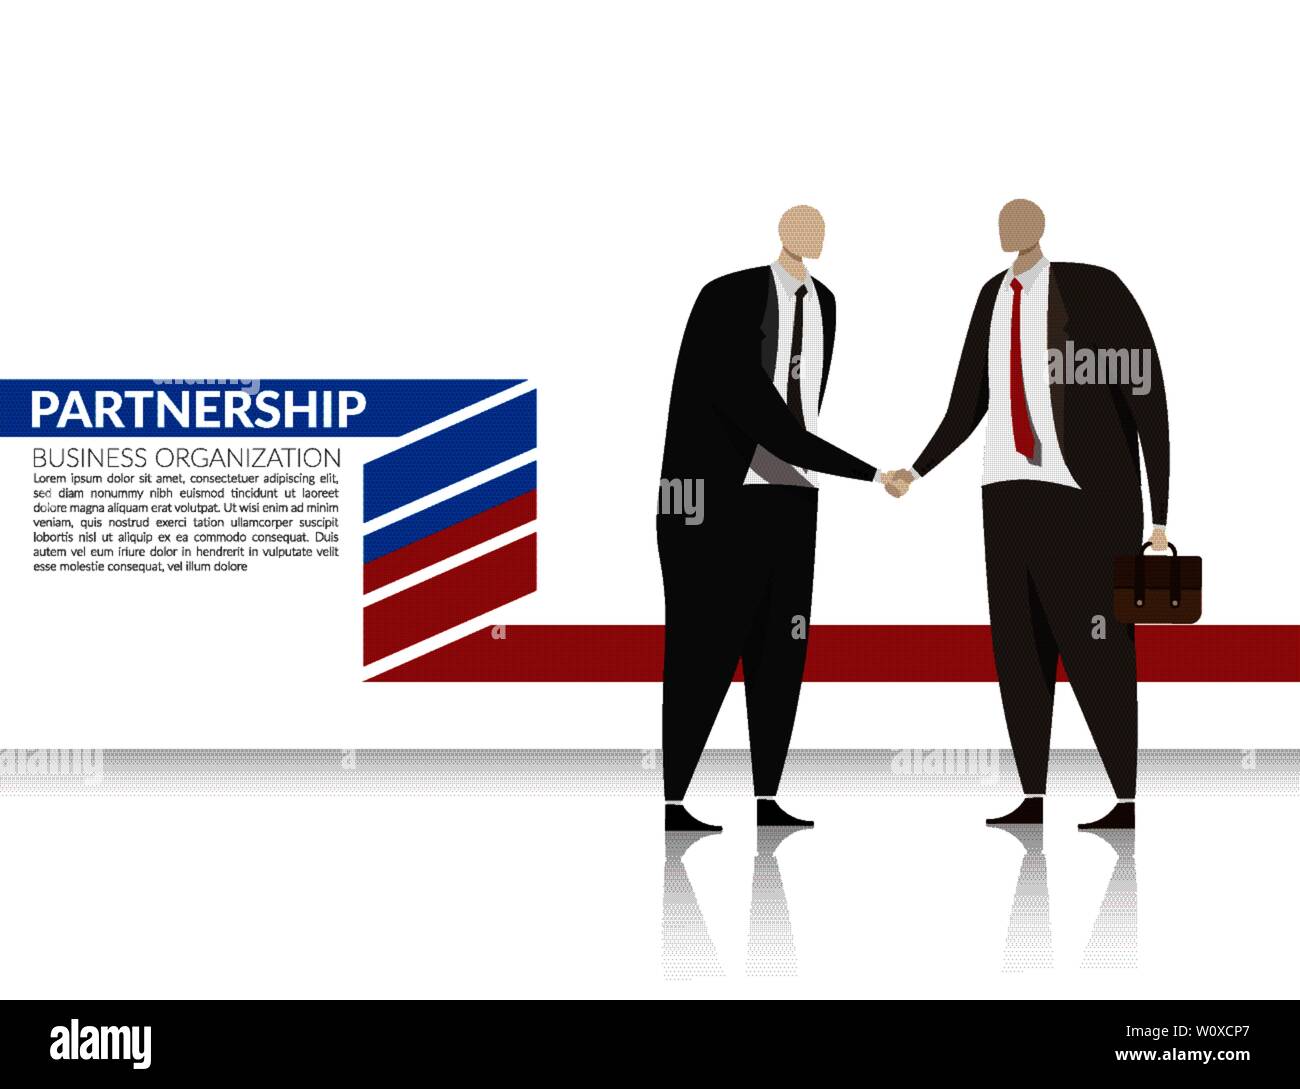 Corporation Business Partnership Konzept. zwei Geschäftsmänner Hand für ein Abkommen für Partnerschaft auf Business Organisation, moderne Geschäftsmann char Schütteln Stock Vektor